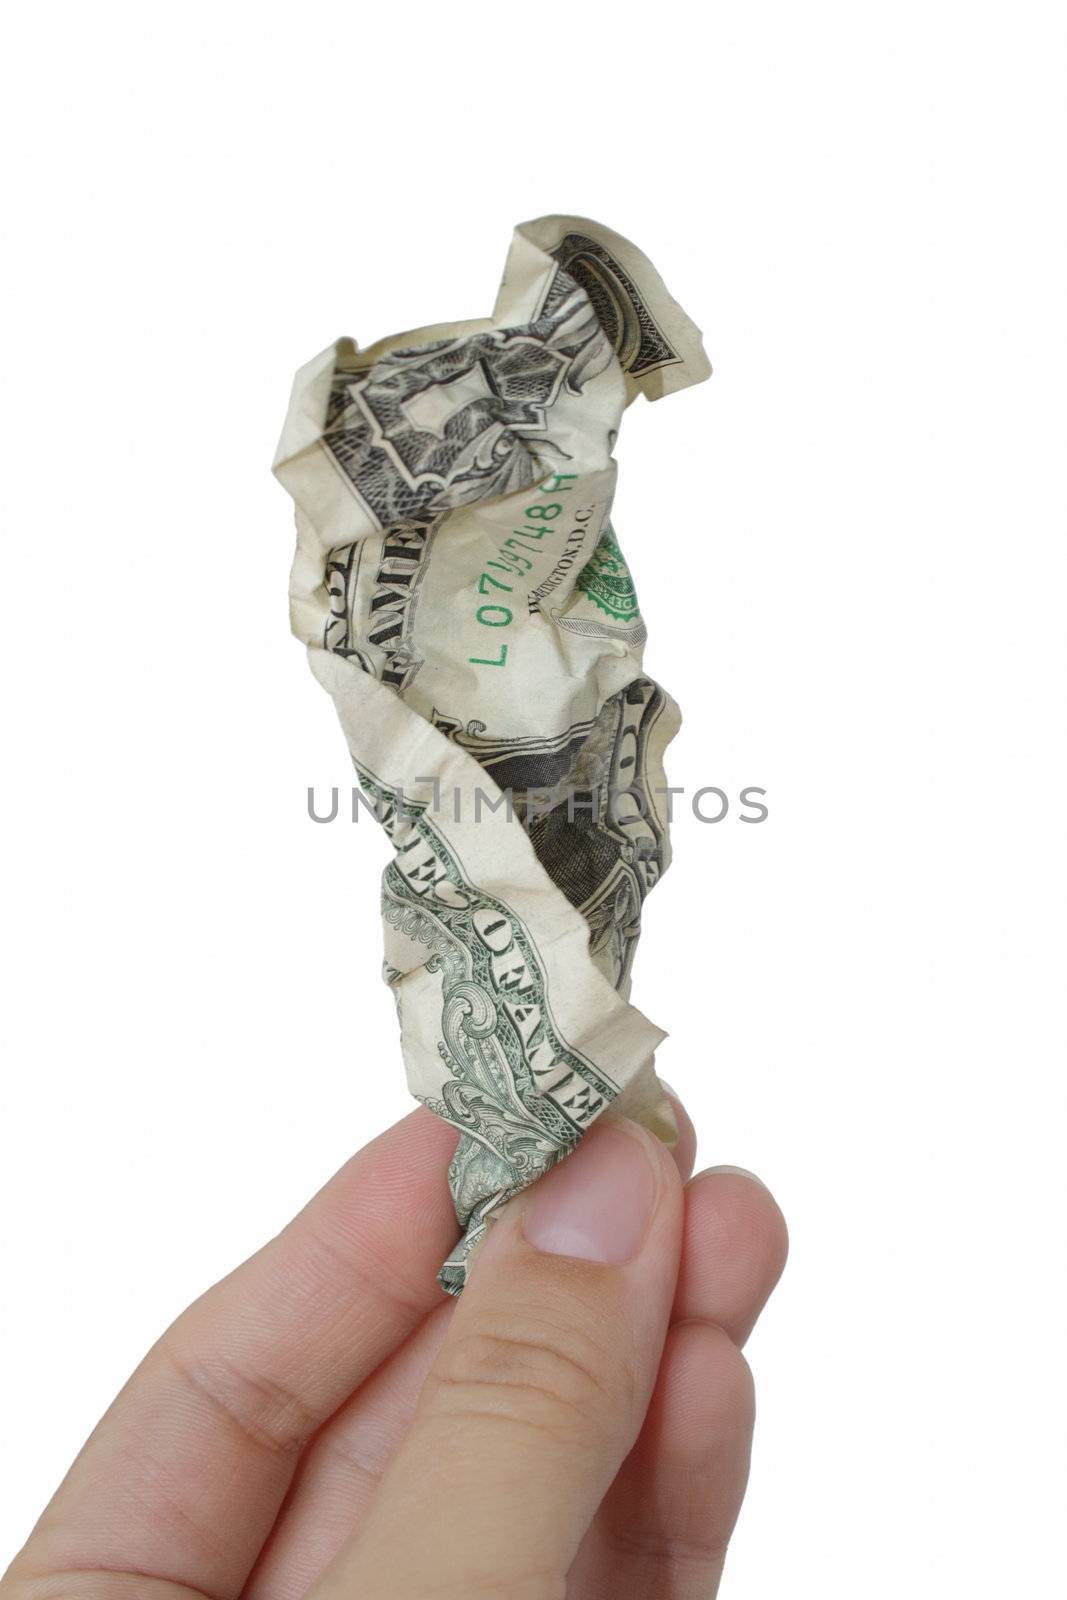 Rumpled one dollar bill by pulen